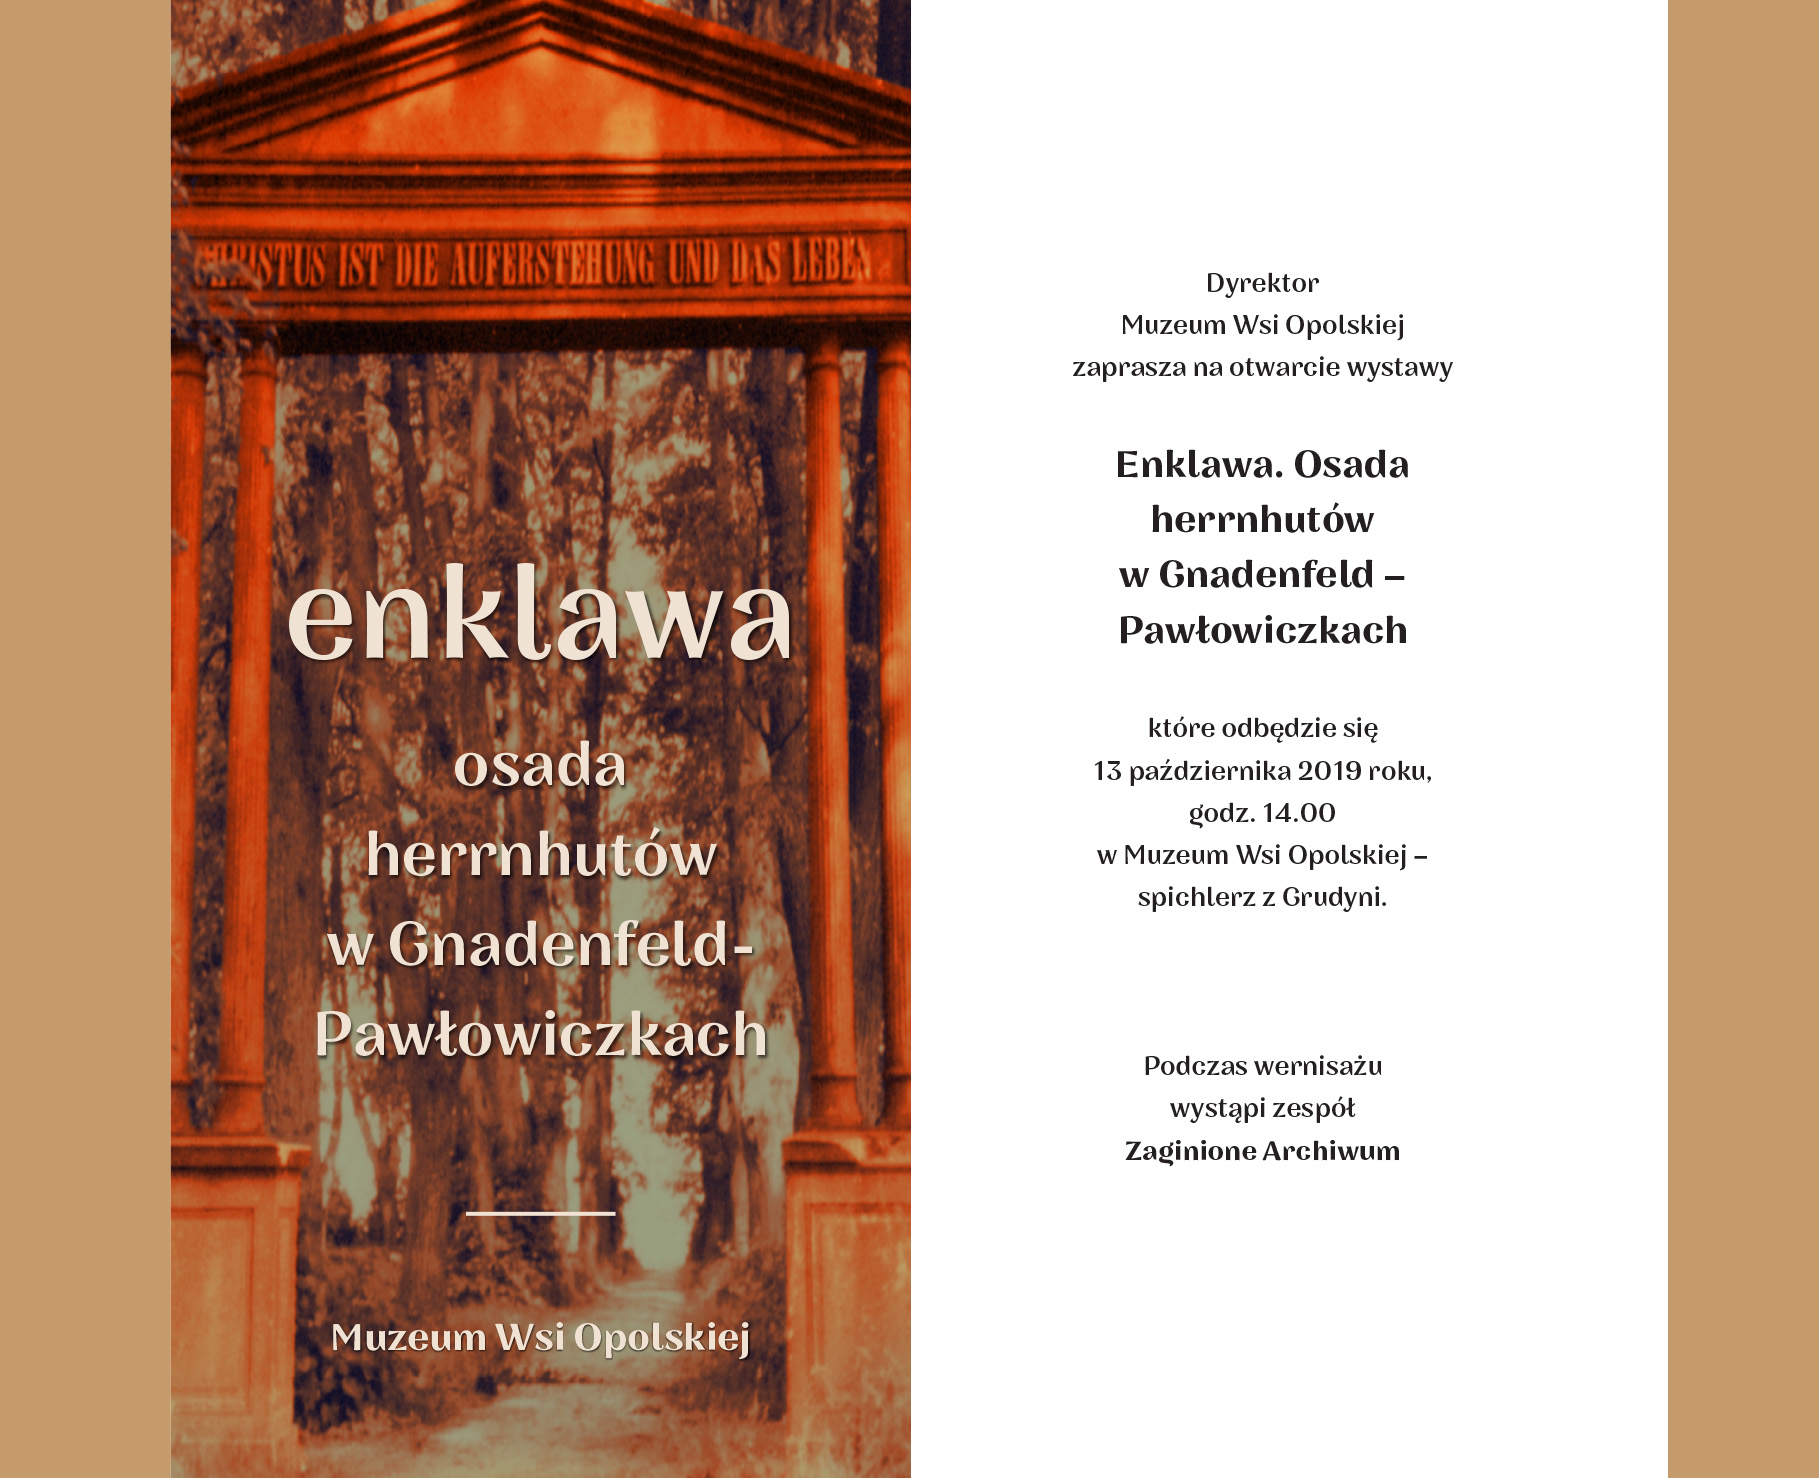 Otwarcie wystawy odbędzie się 13 października 2019 r., o godz. 14:00 w Muzeum Wsi Opolskiej w Opolu, w spichlerzu z Grudyni.